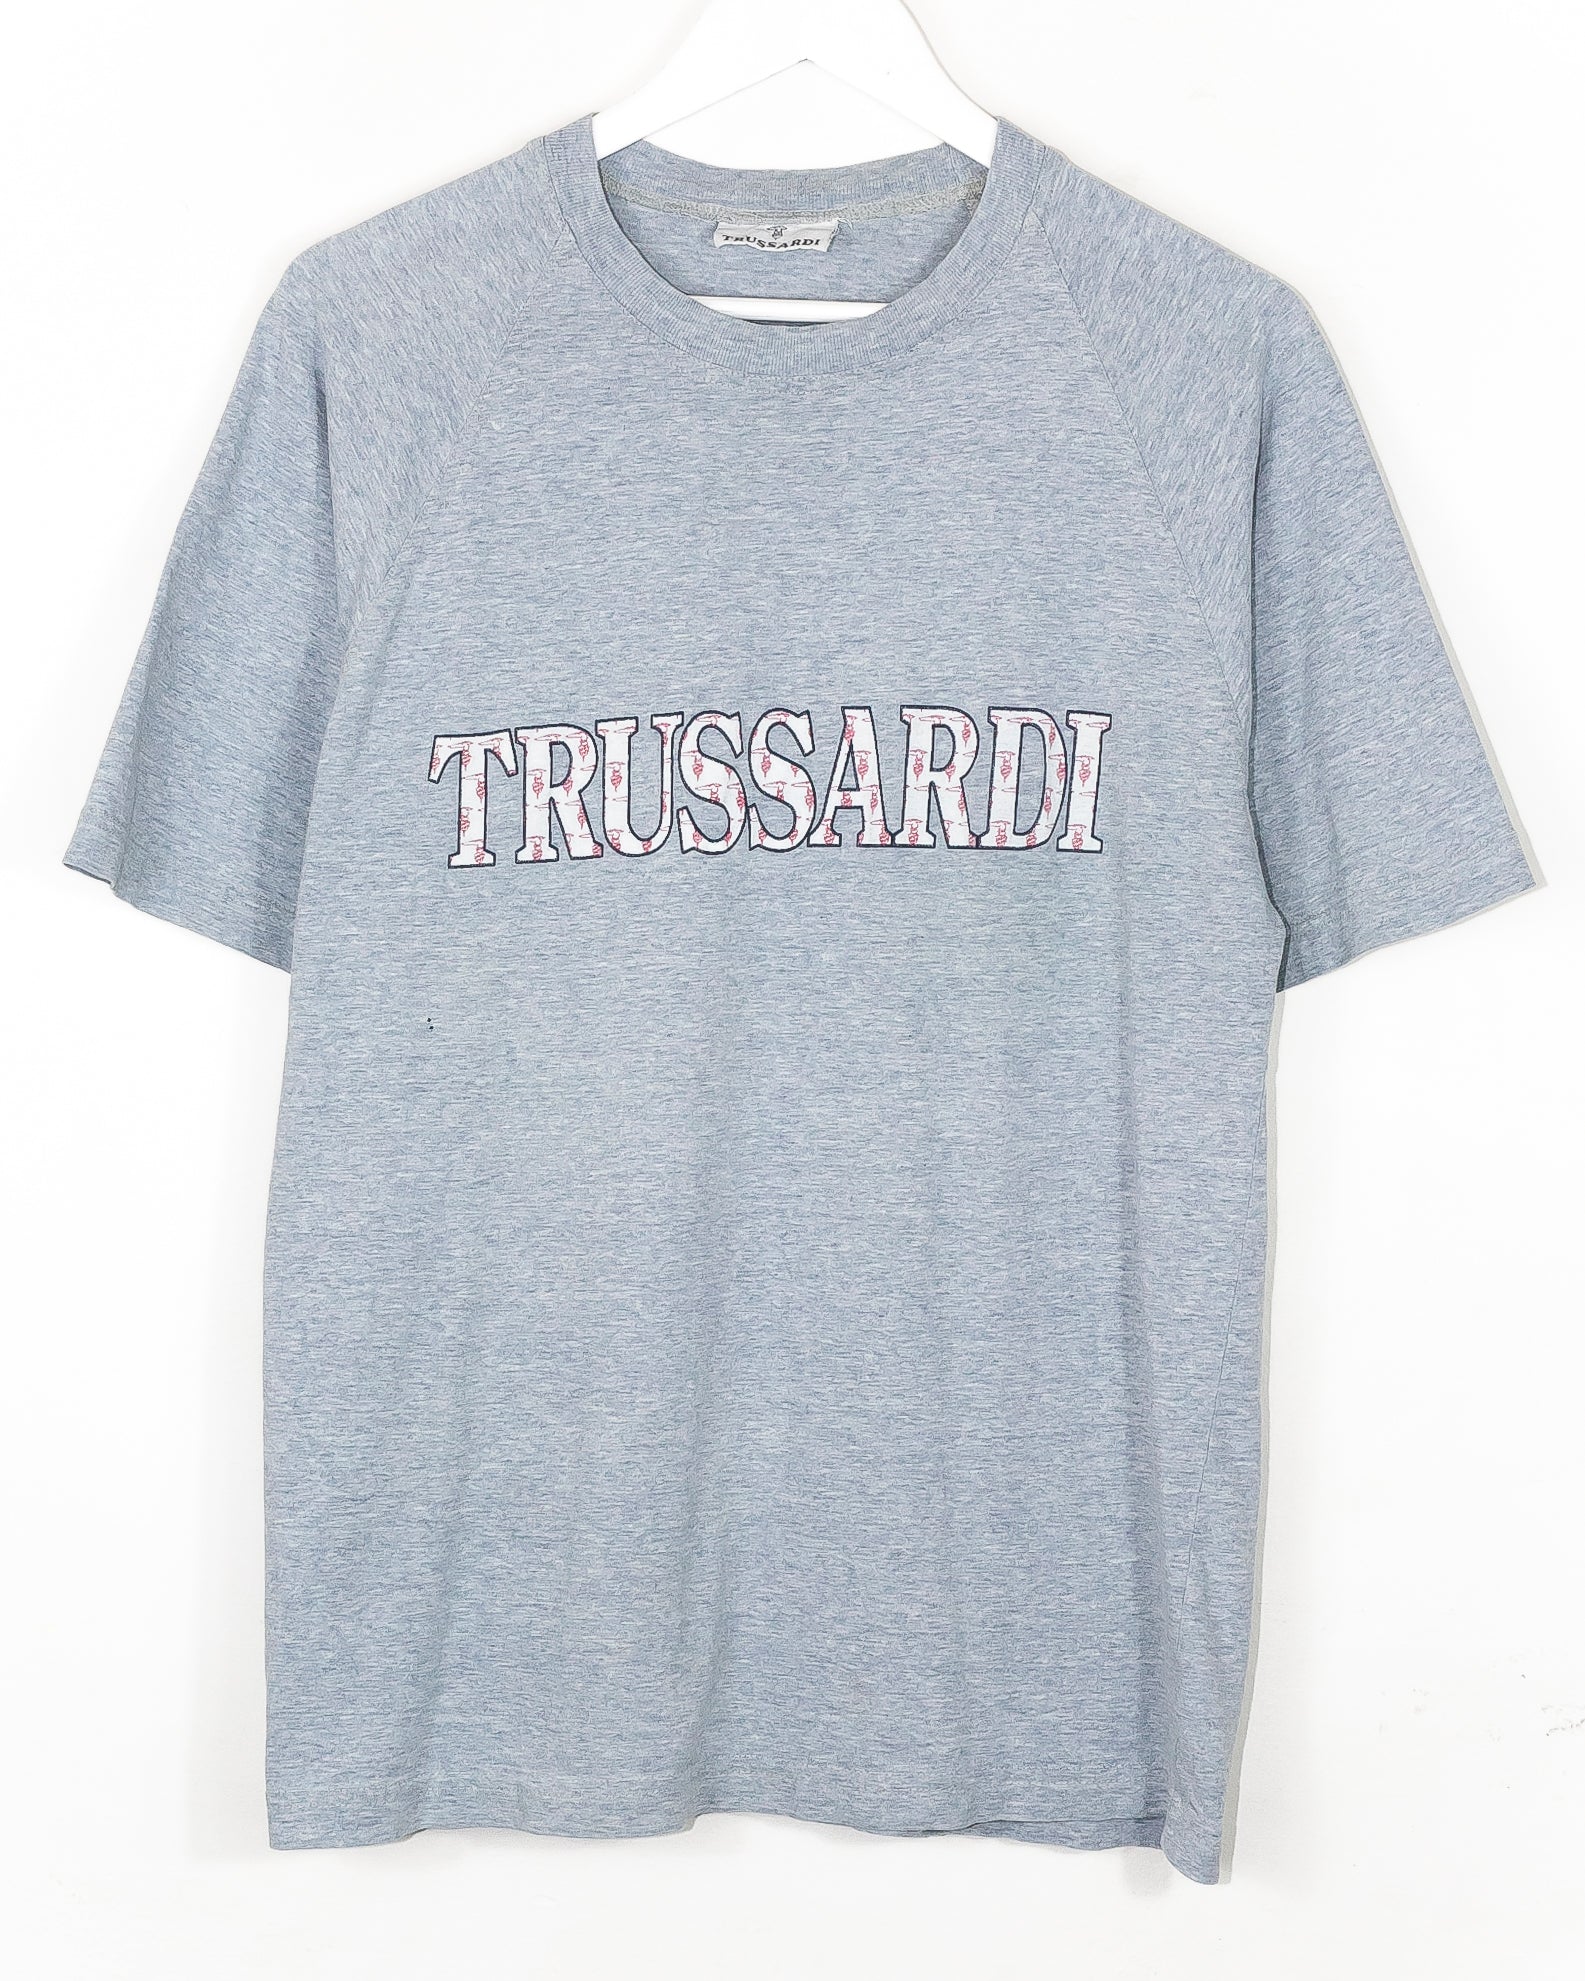 Vintage Trussardi T-shirt (L)